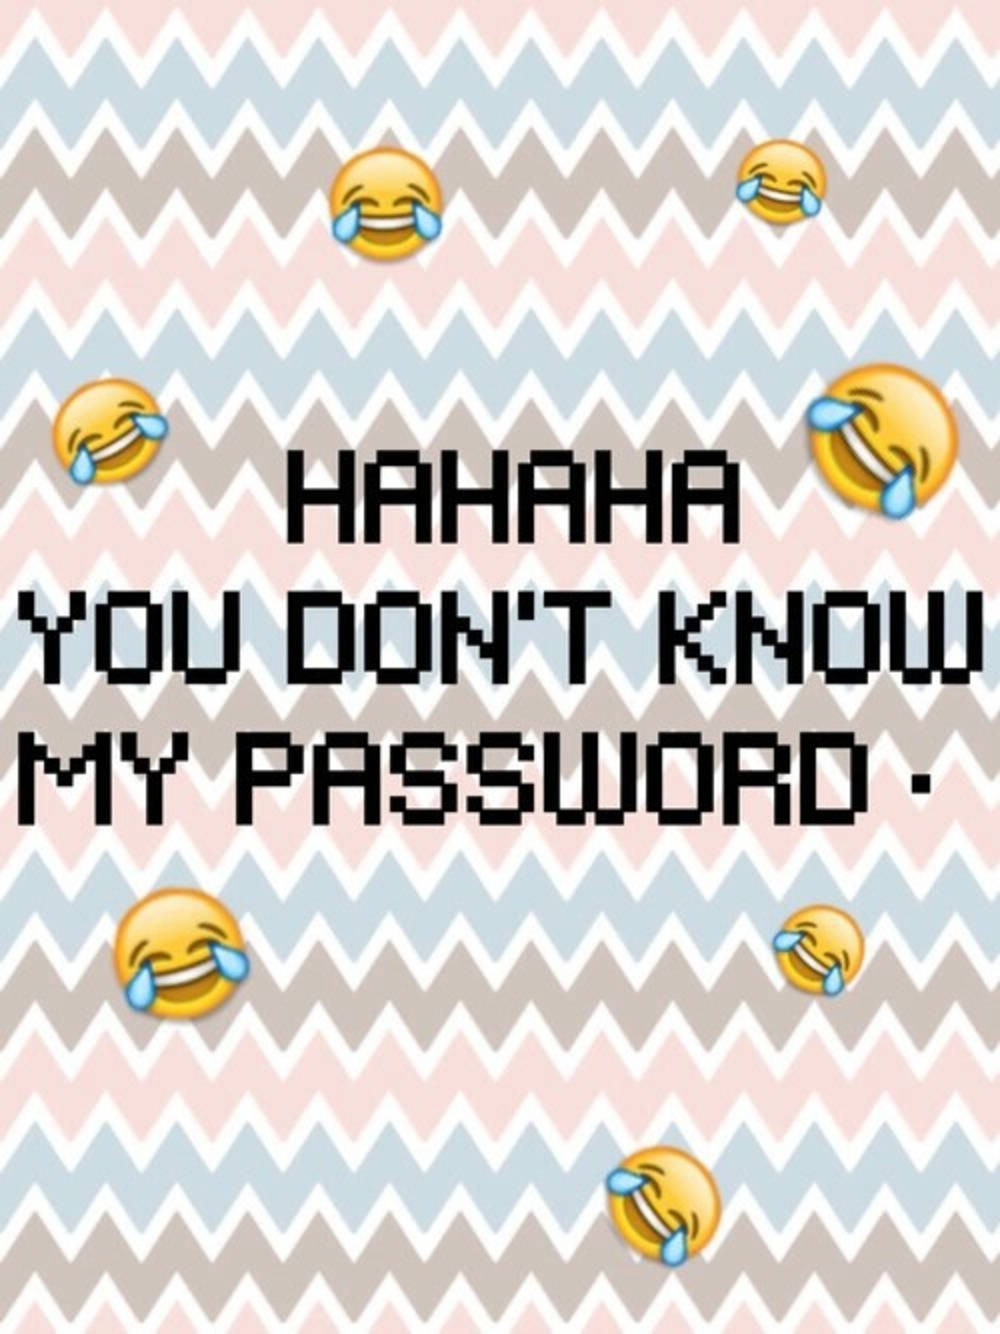 Hahaha,du Kennst Mein Passwort Nicht. Wallpaper